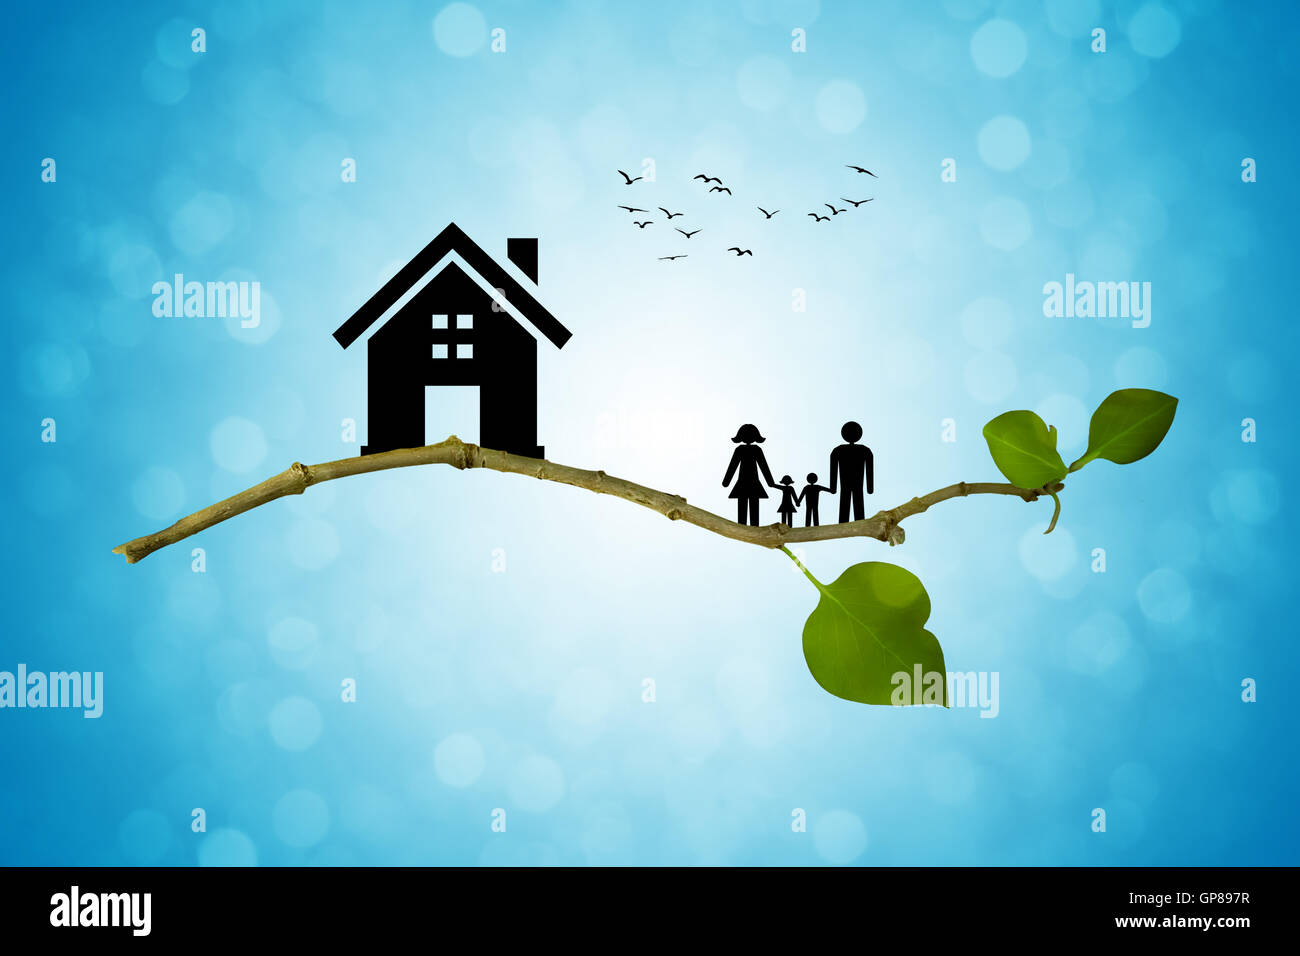 Branche d'arbre avec des silhouettes de maison et famille. Le concept d'une famille heureuse. La vie éco Banque D'Images